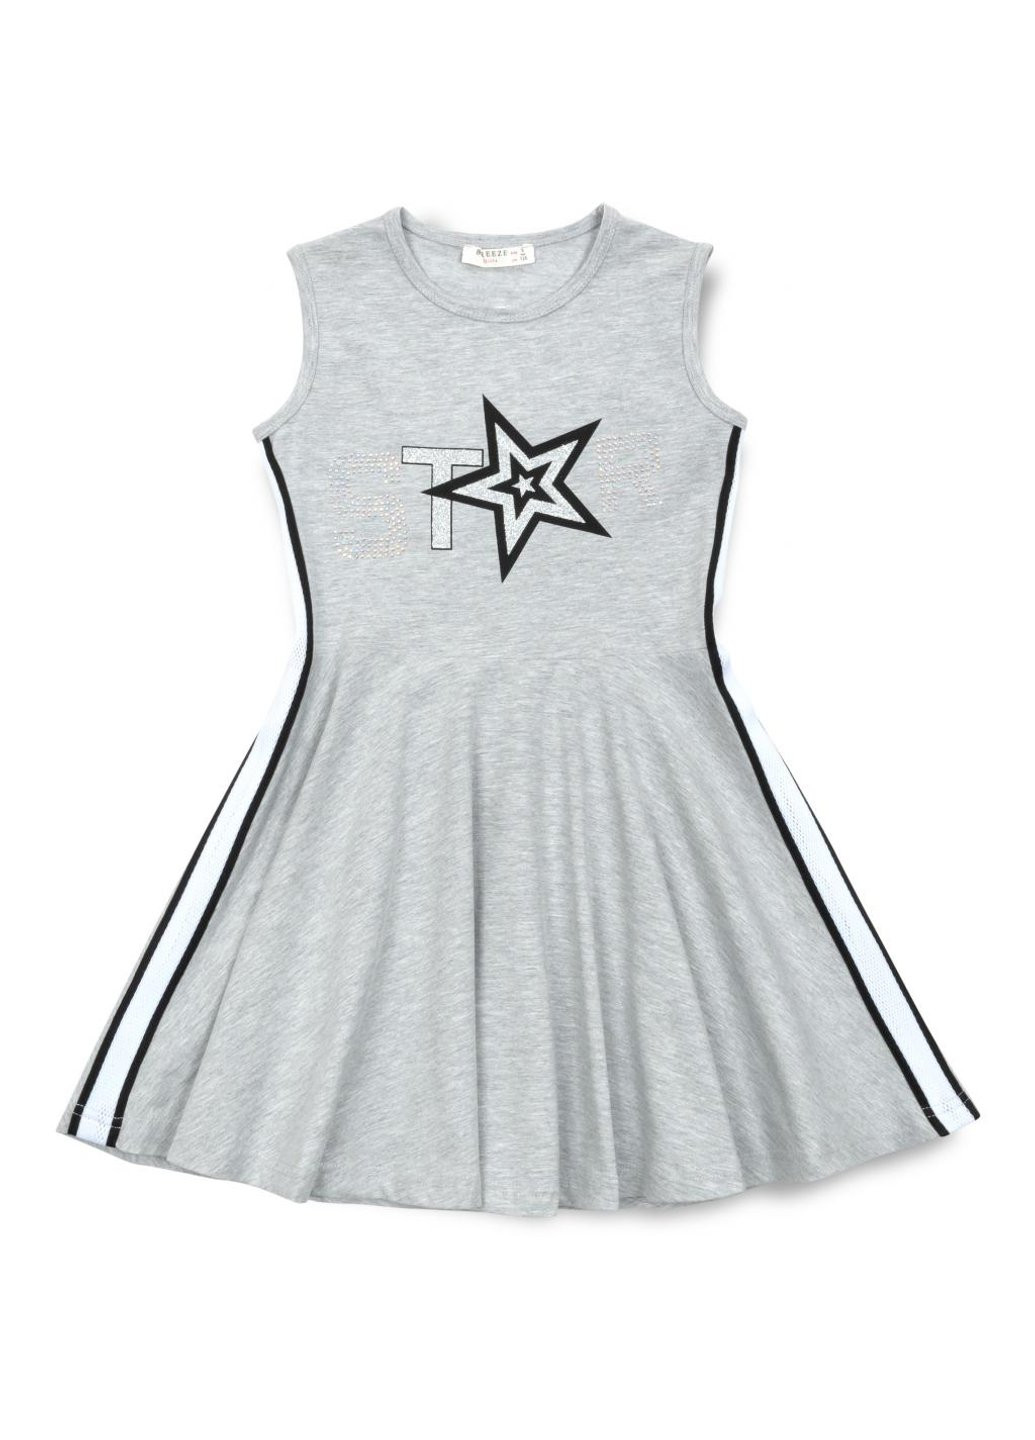 Серое платье со звездой (14410-164g-gray) Breeze (257207910)